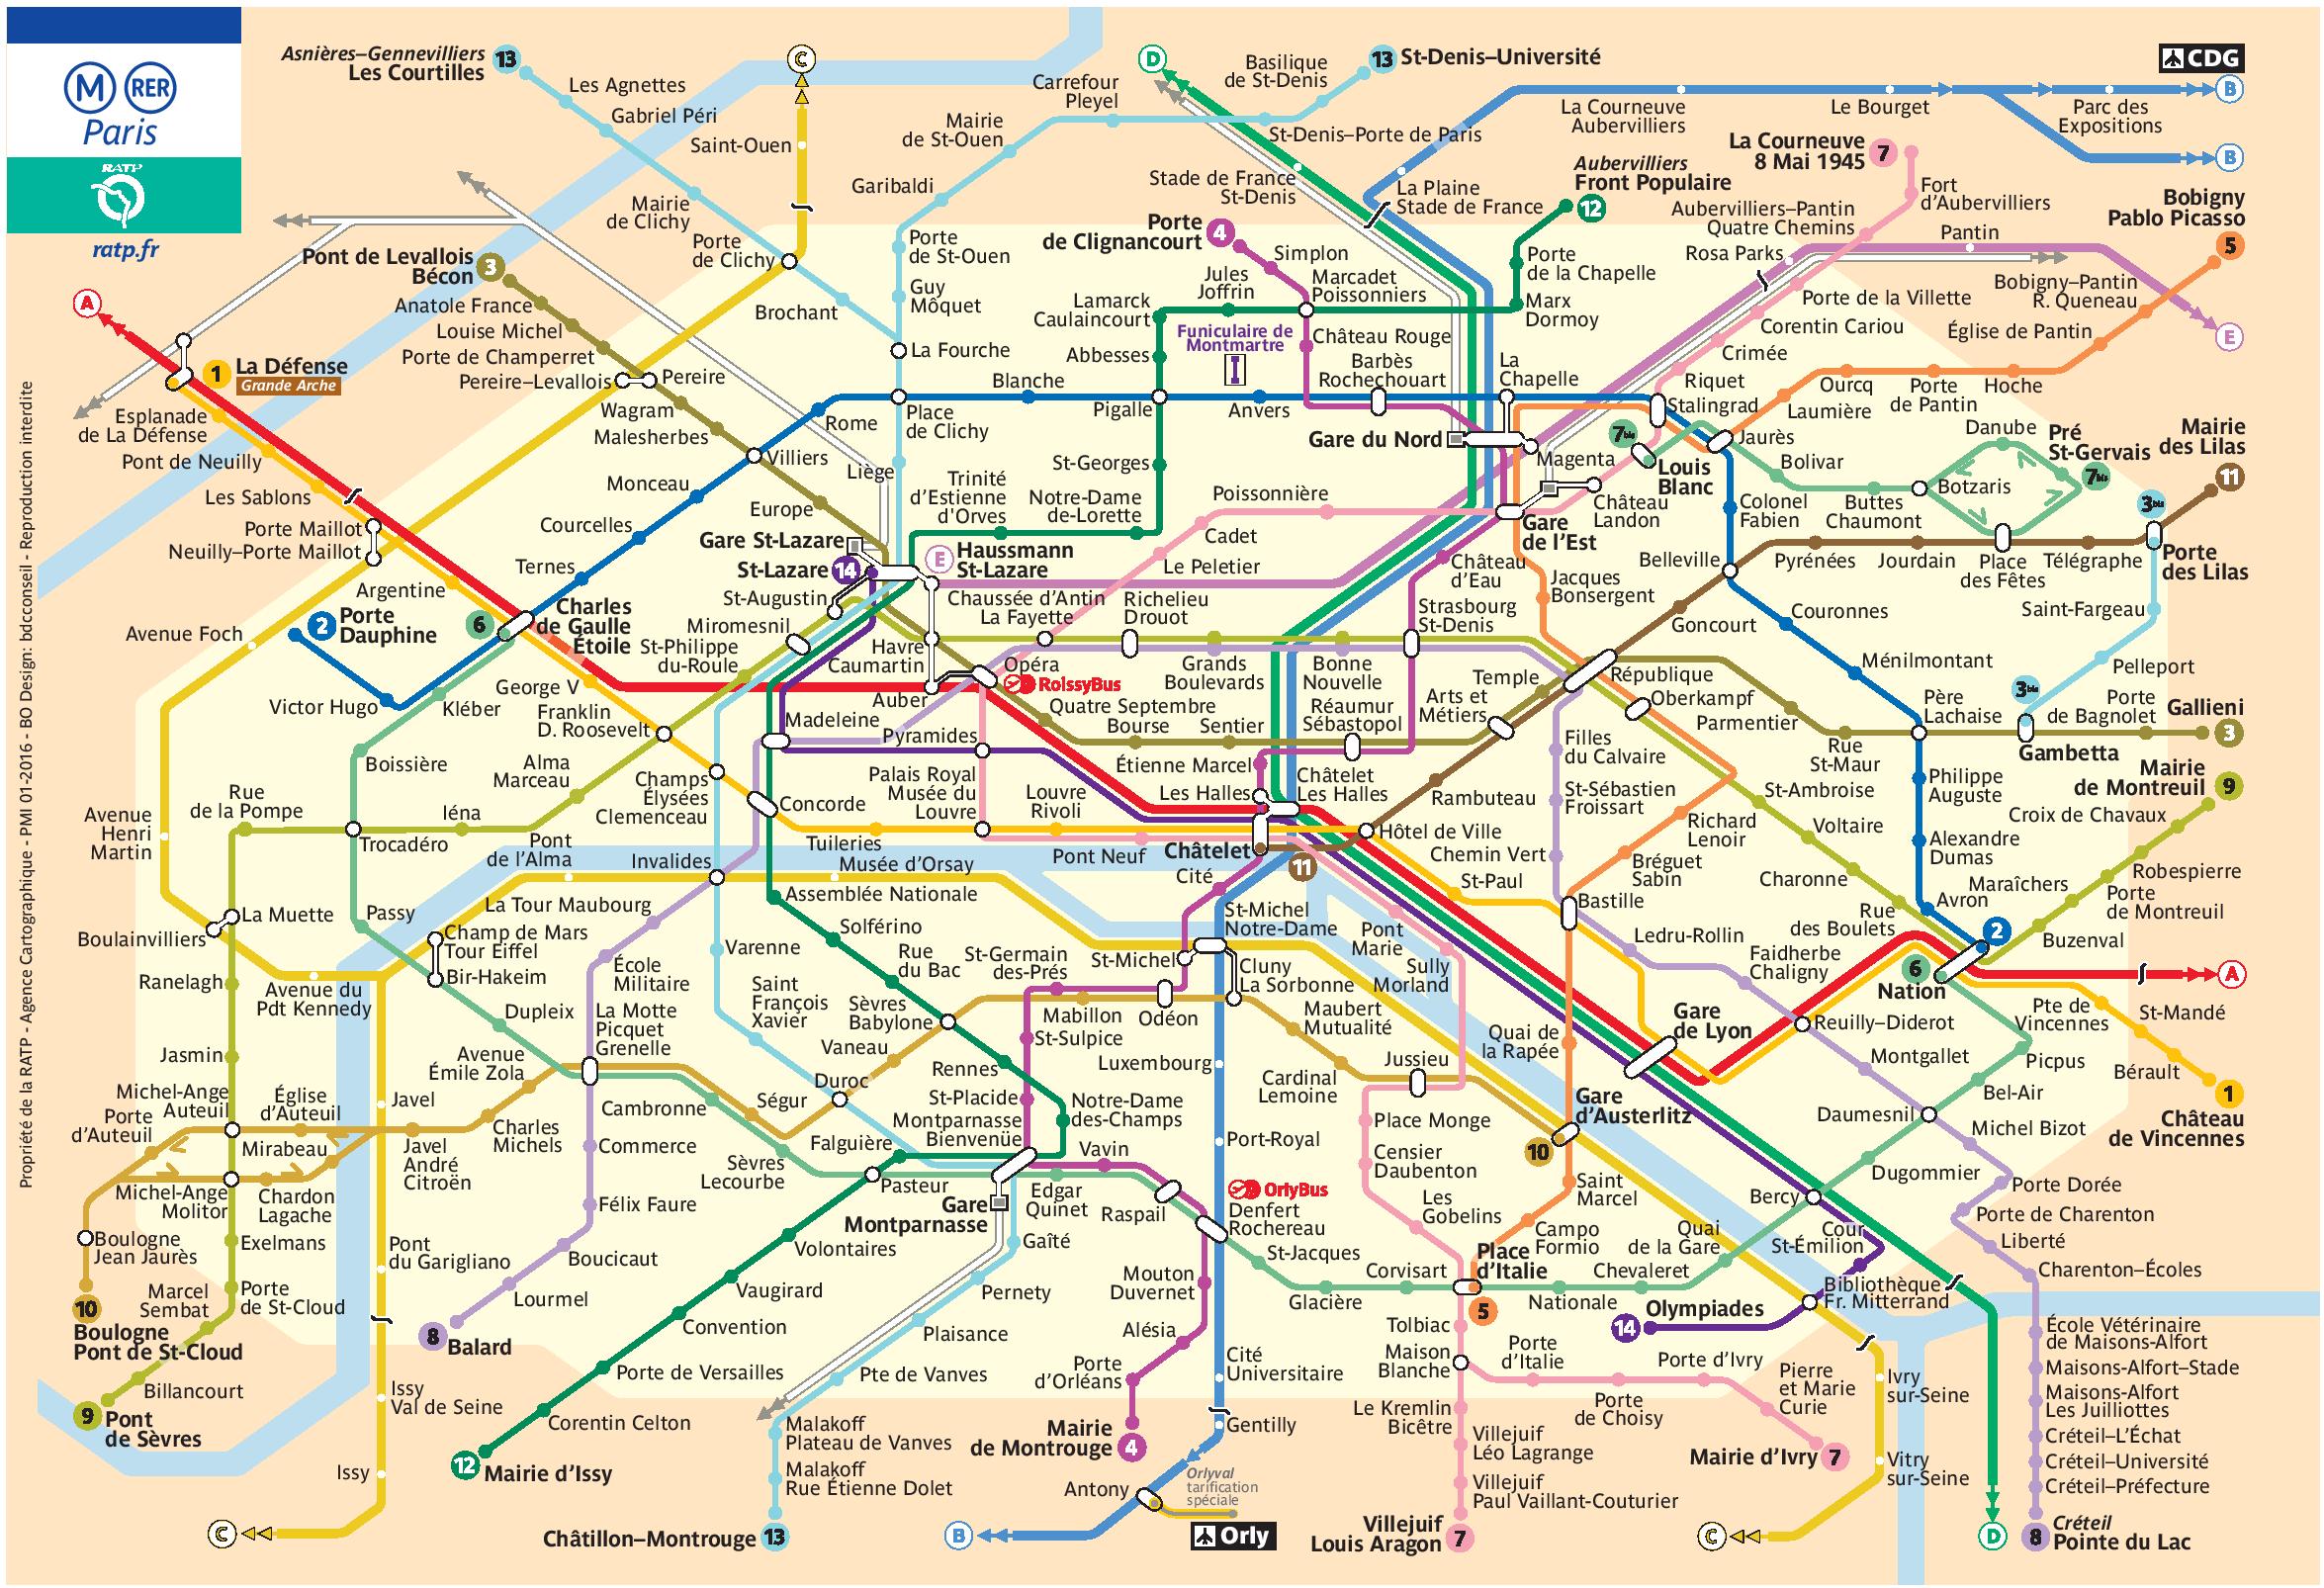 Free map of Paris metro to download in PDF - Night Fox Tips